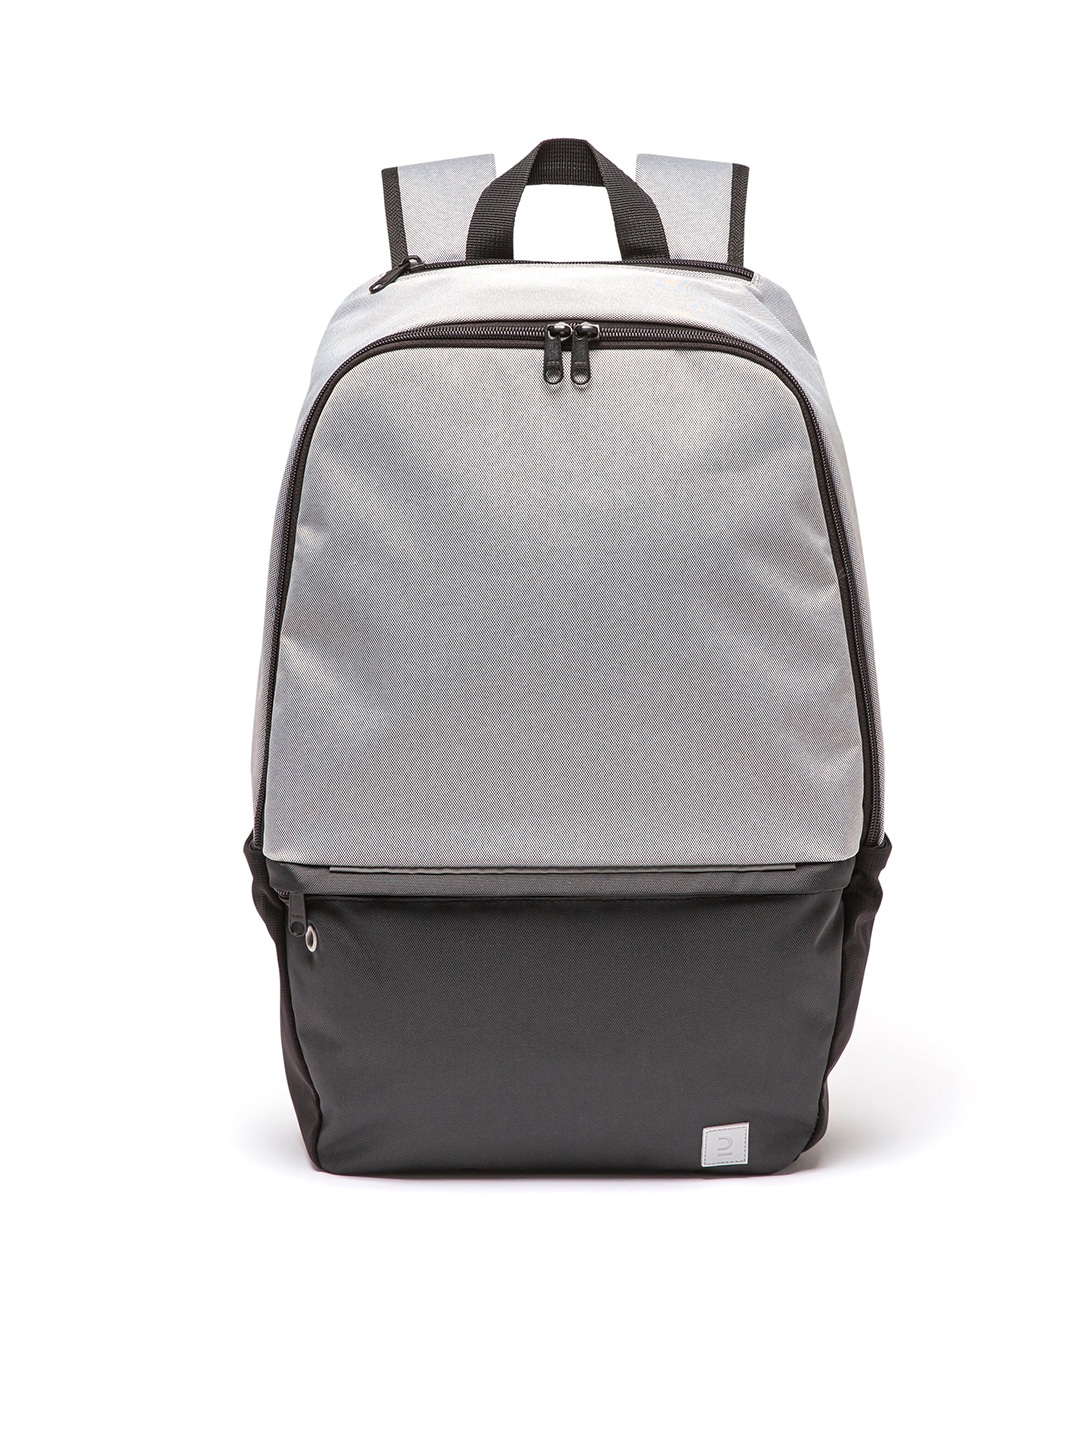 Accessories Backpacks | Kipsta By Decathlon Unisex Grey Backpack - AL80588